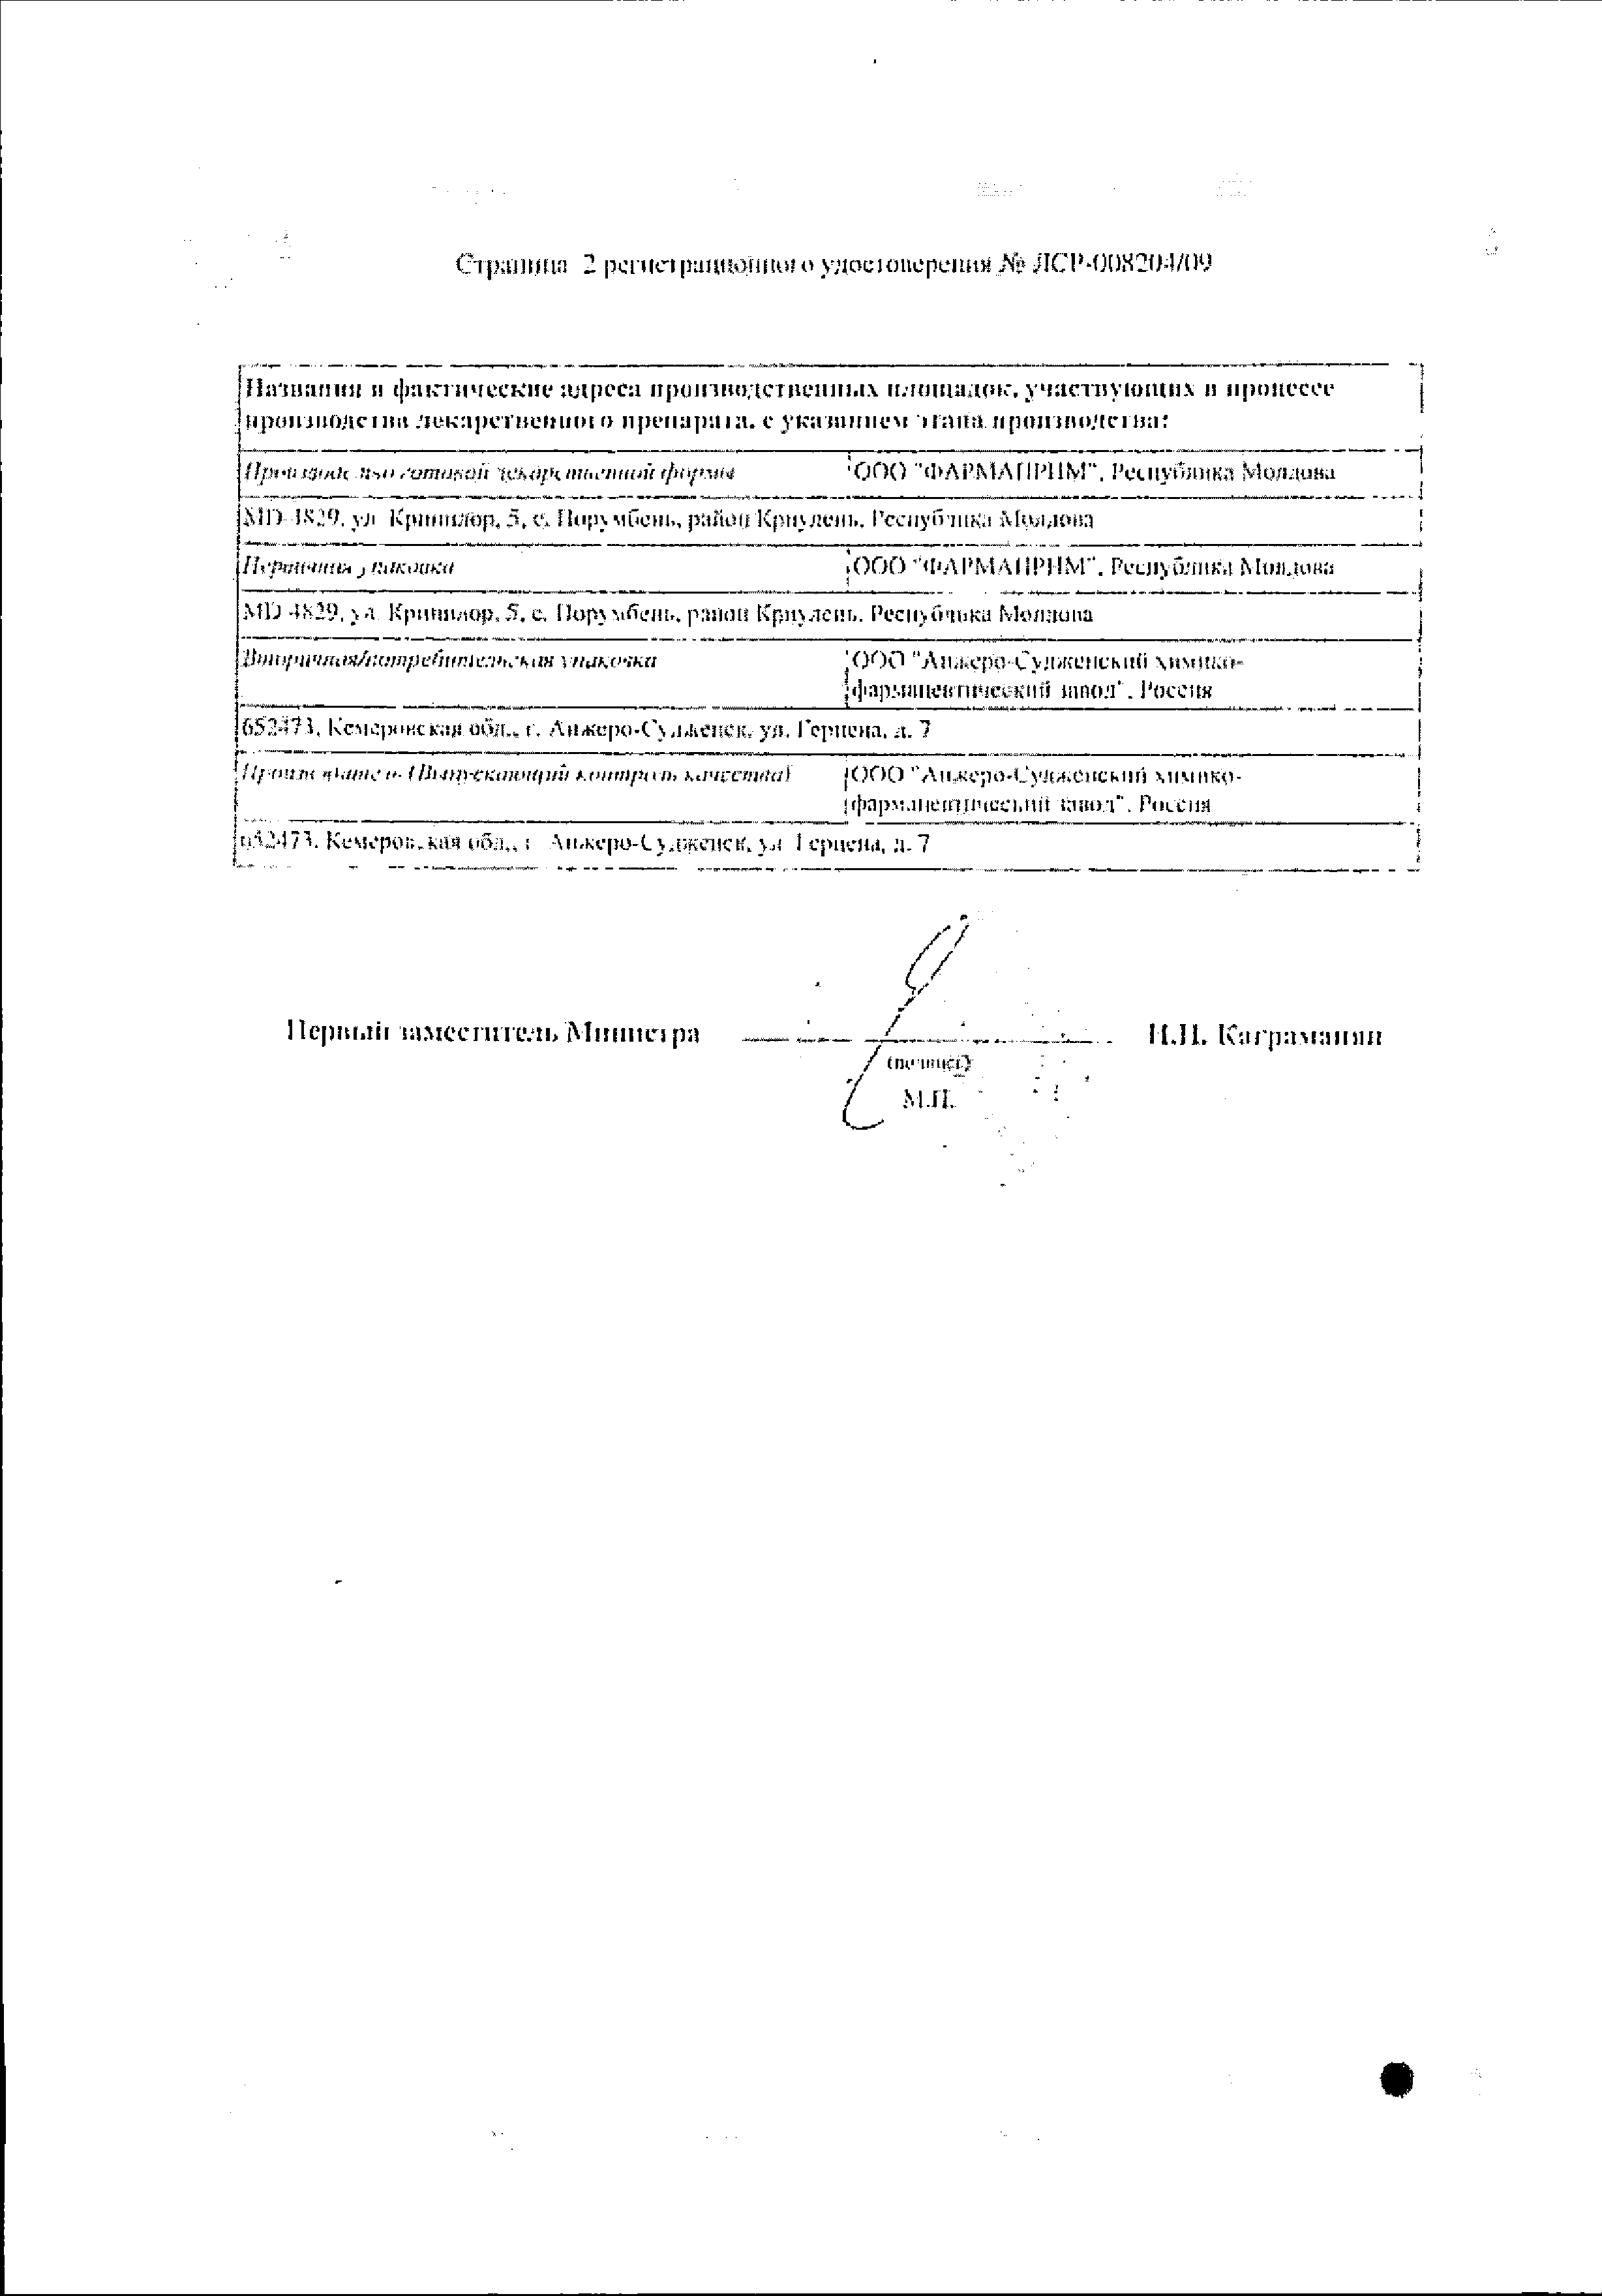 Метронидазол (свечи) сертификат